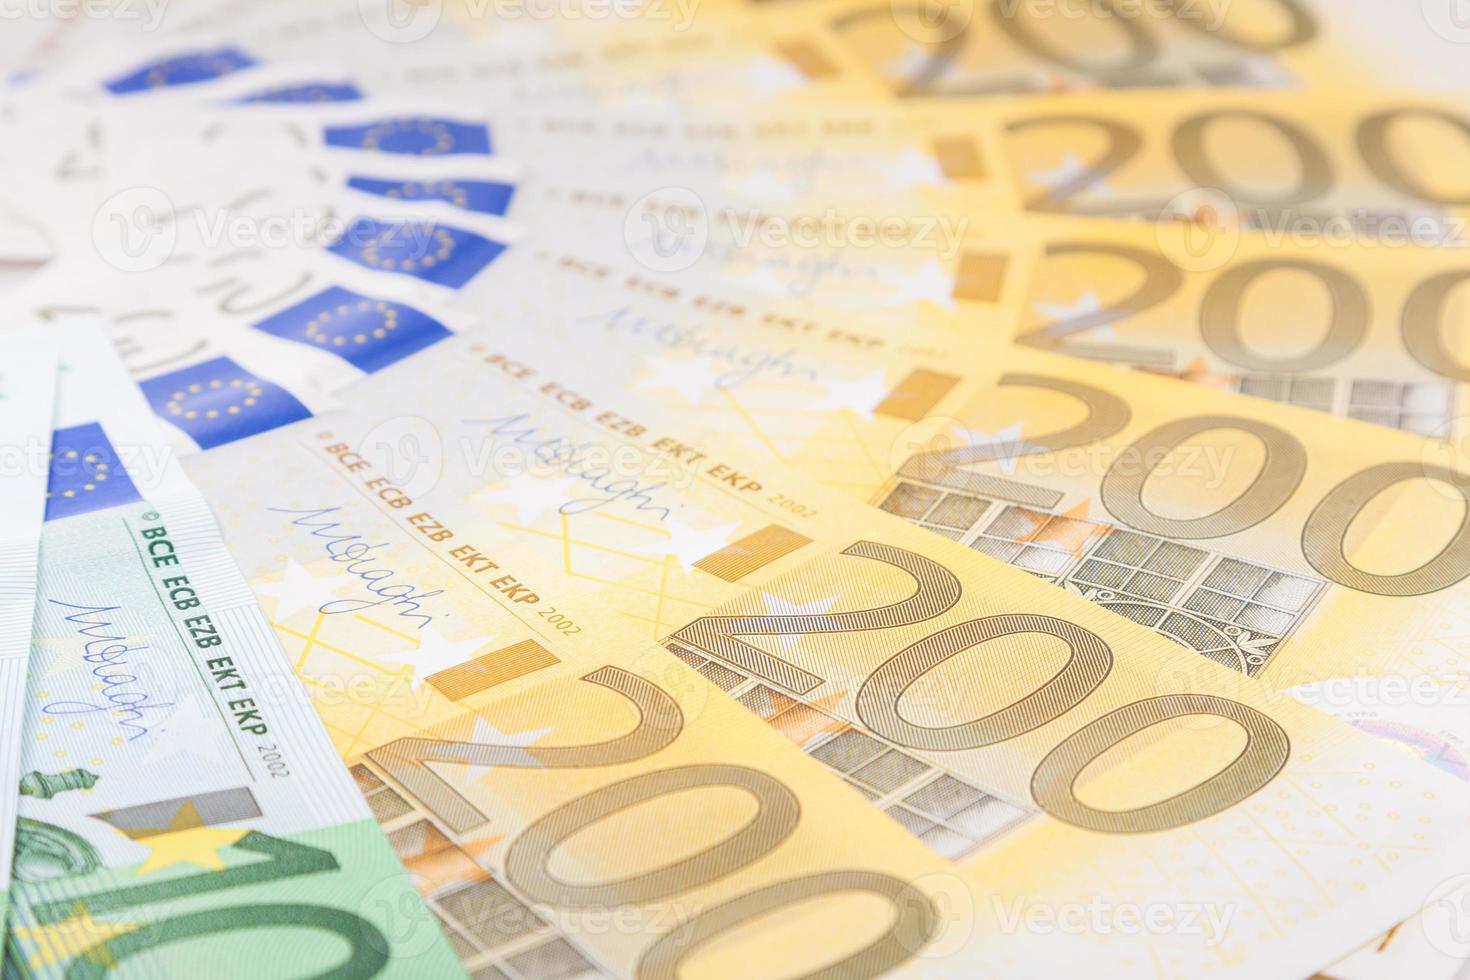 Des billets en euros répartis sur le plancher - monnaie européenne photo